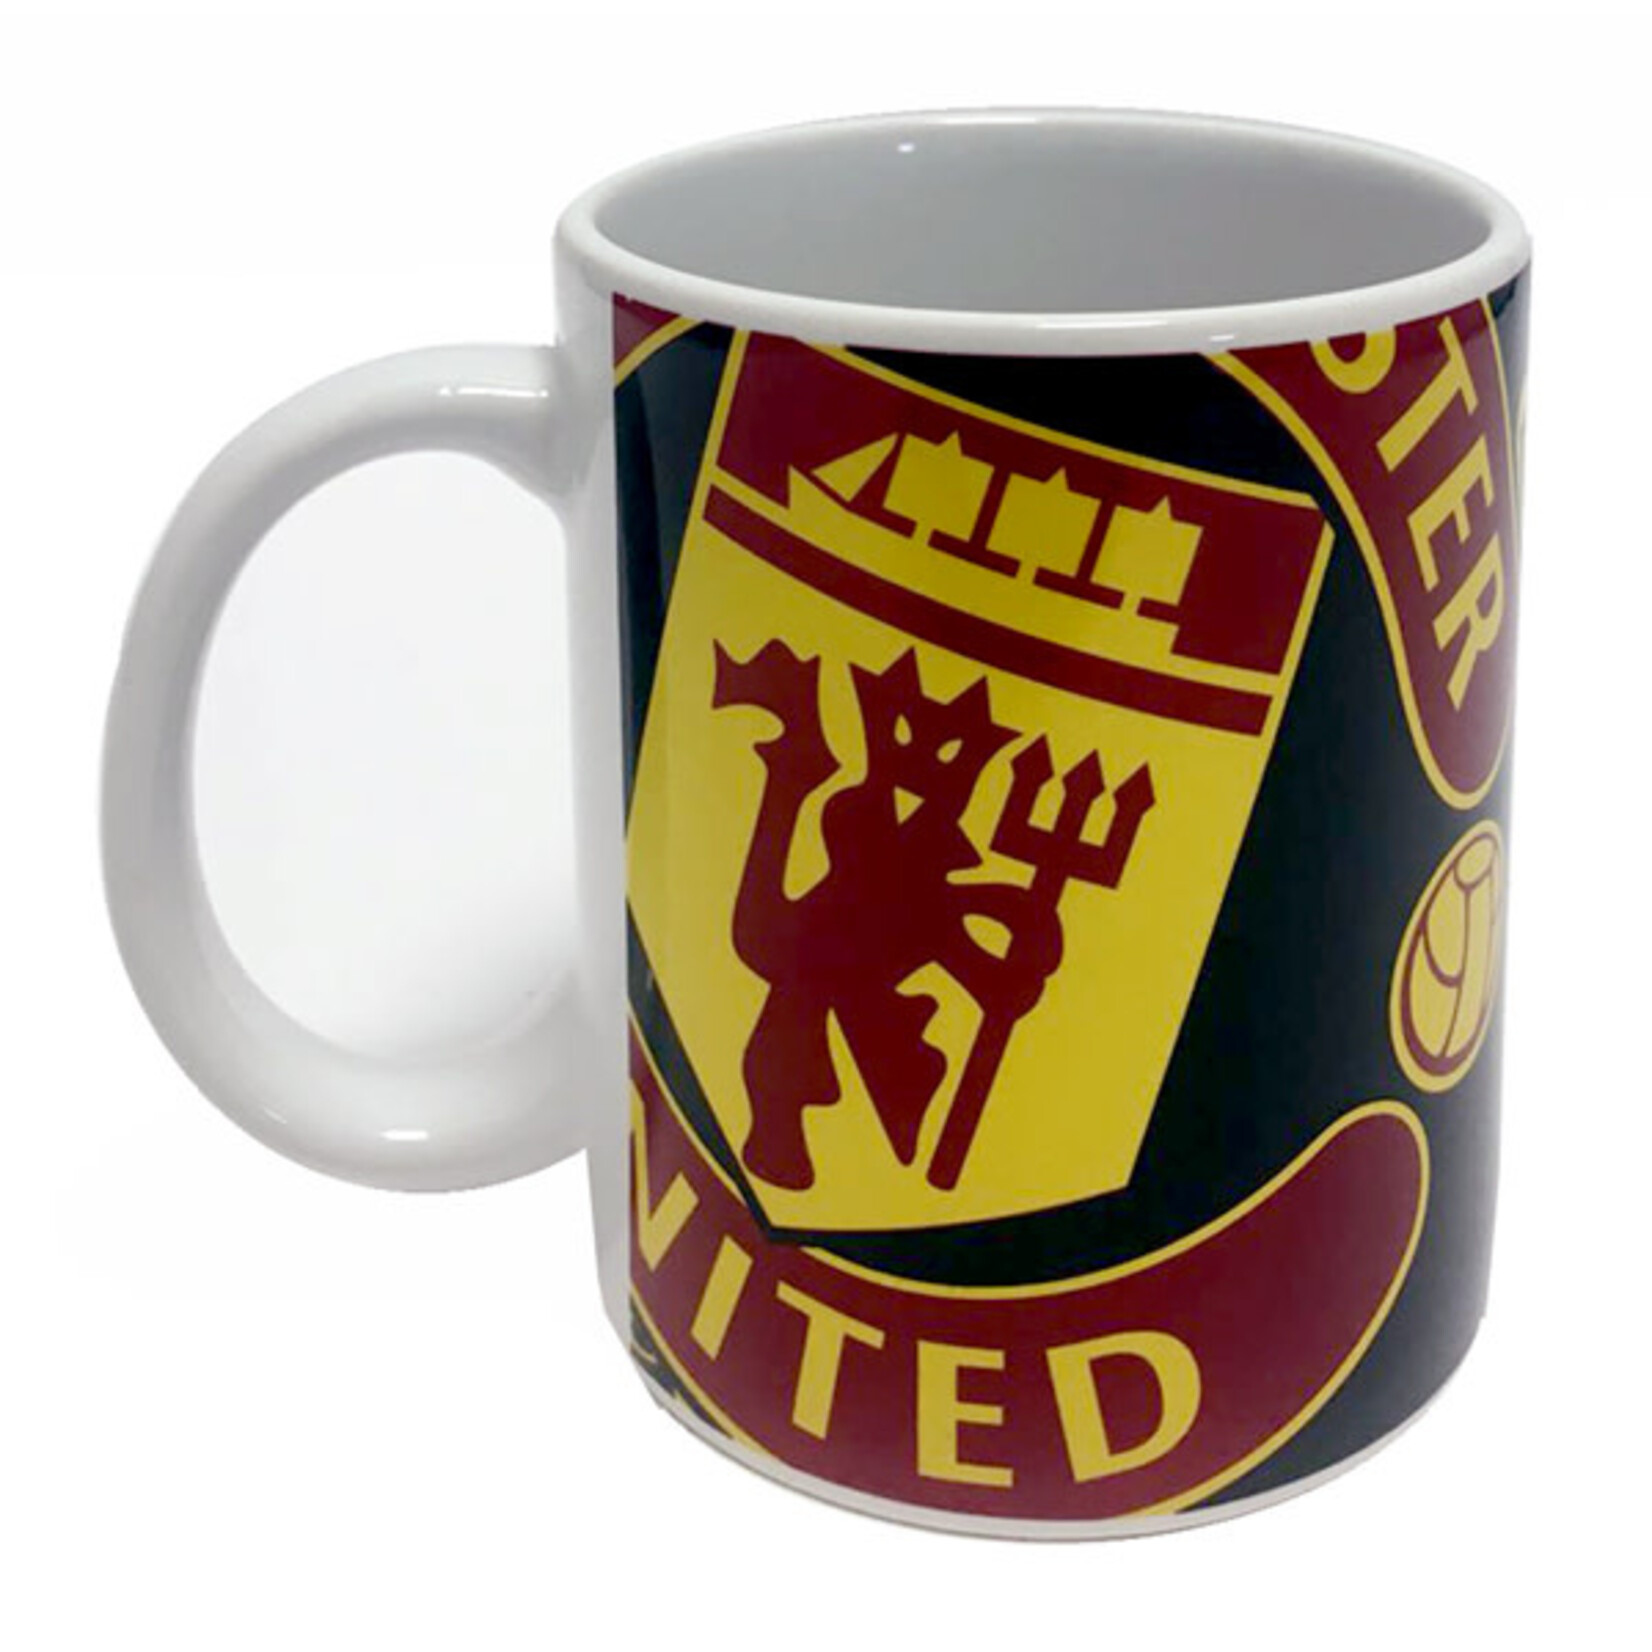 Mimi Imports Manchester United Halftone Mug